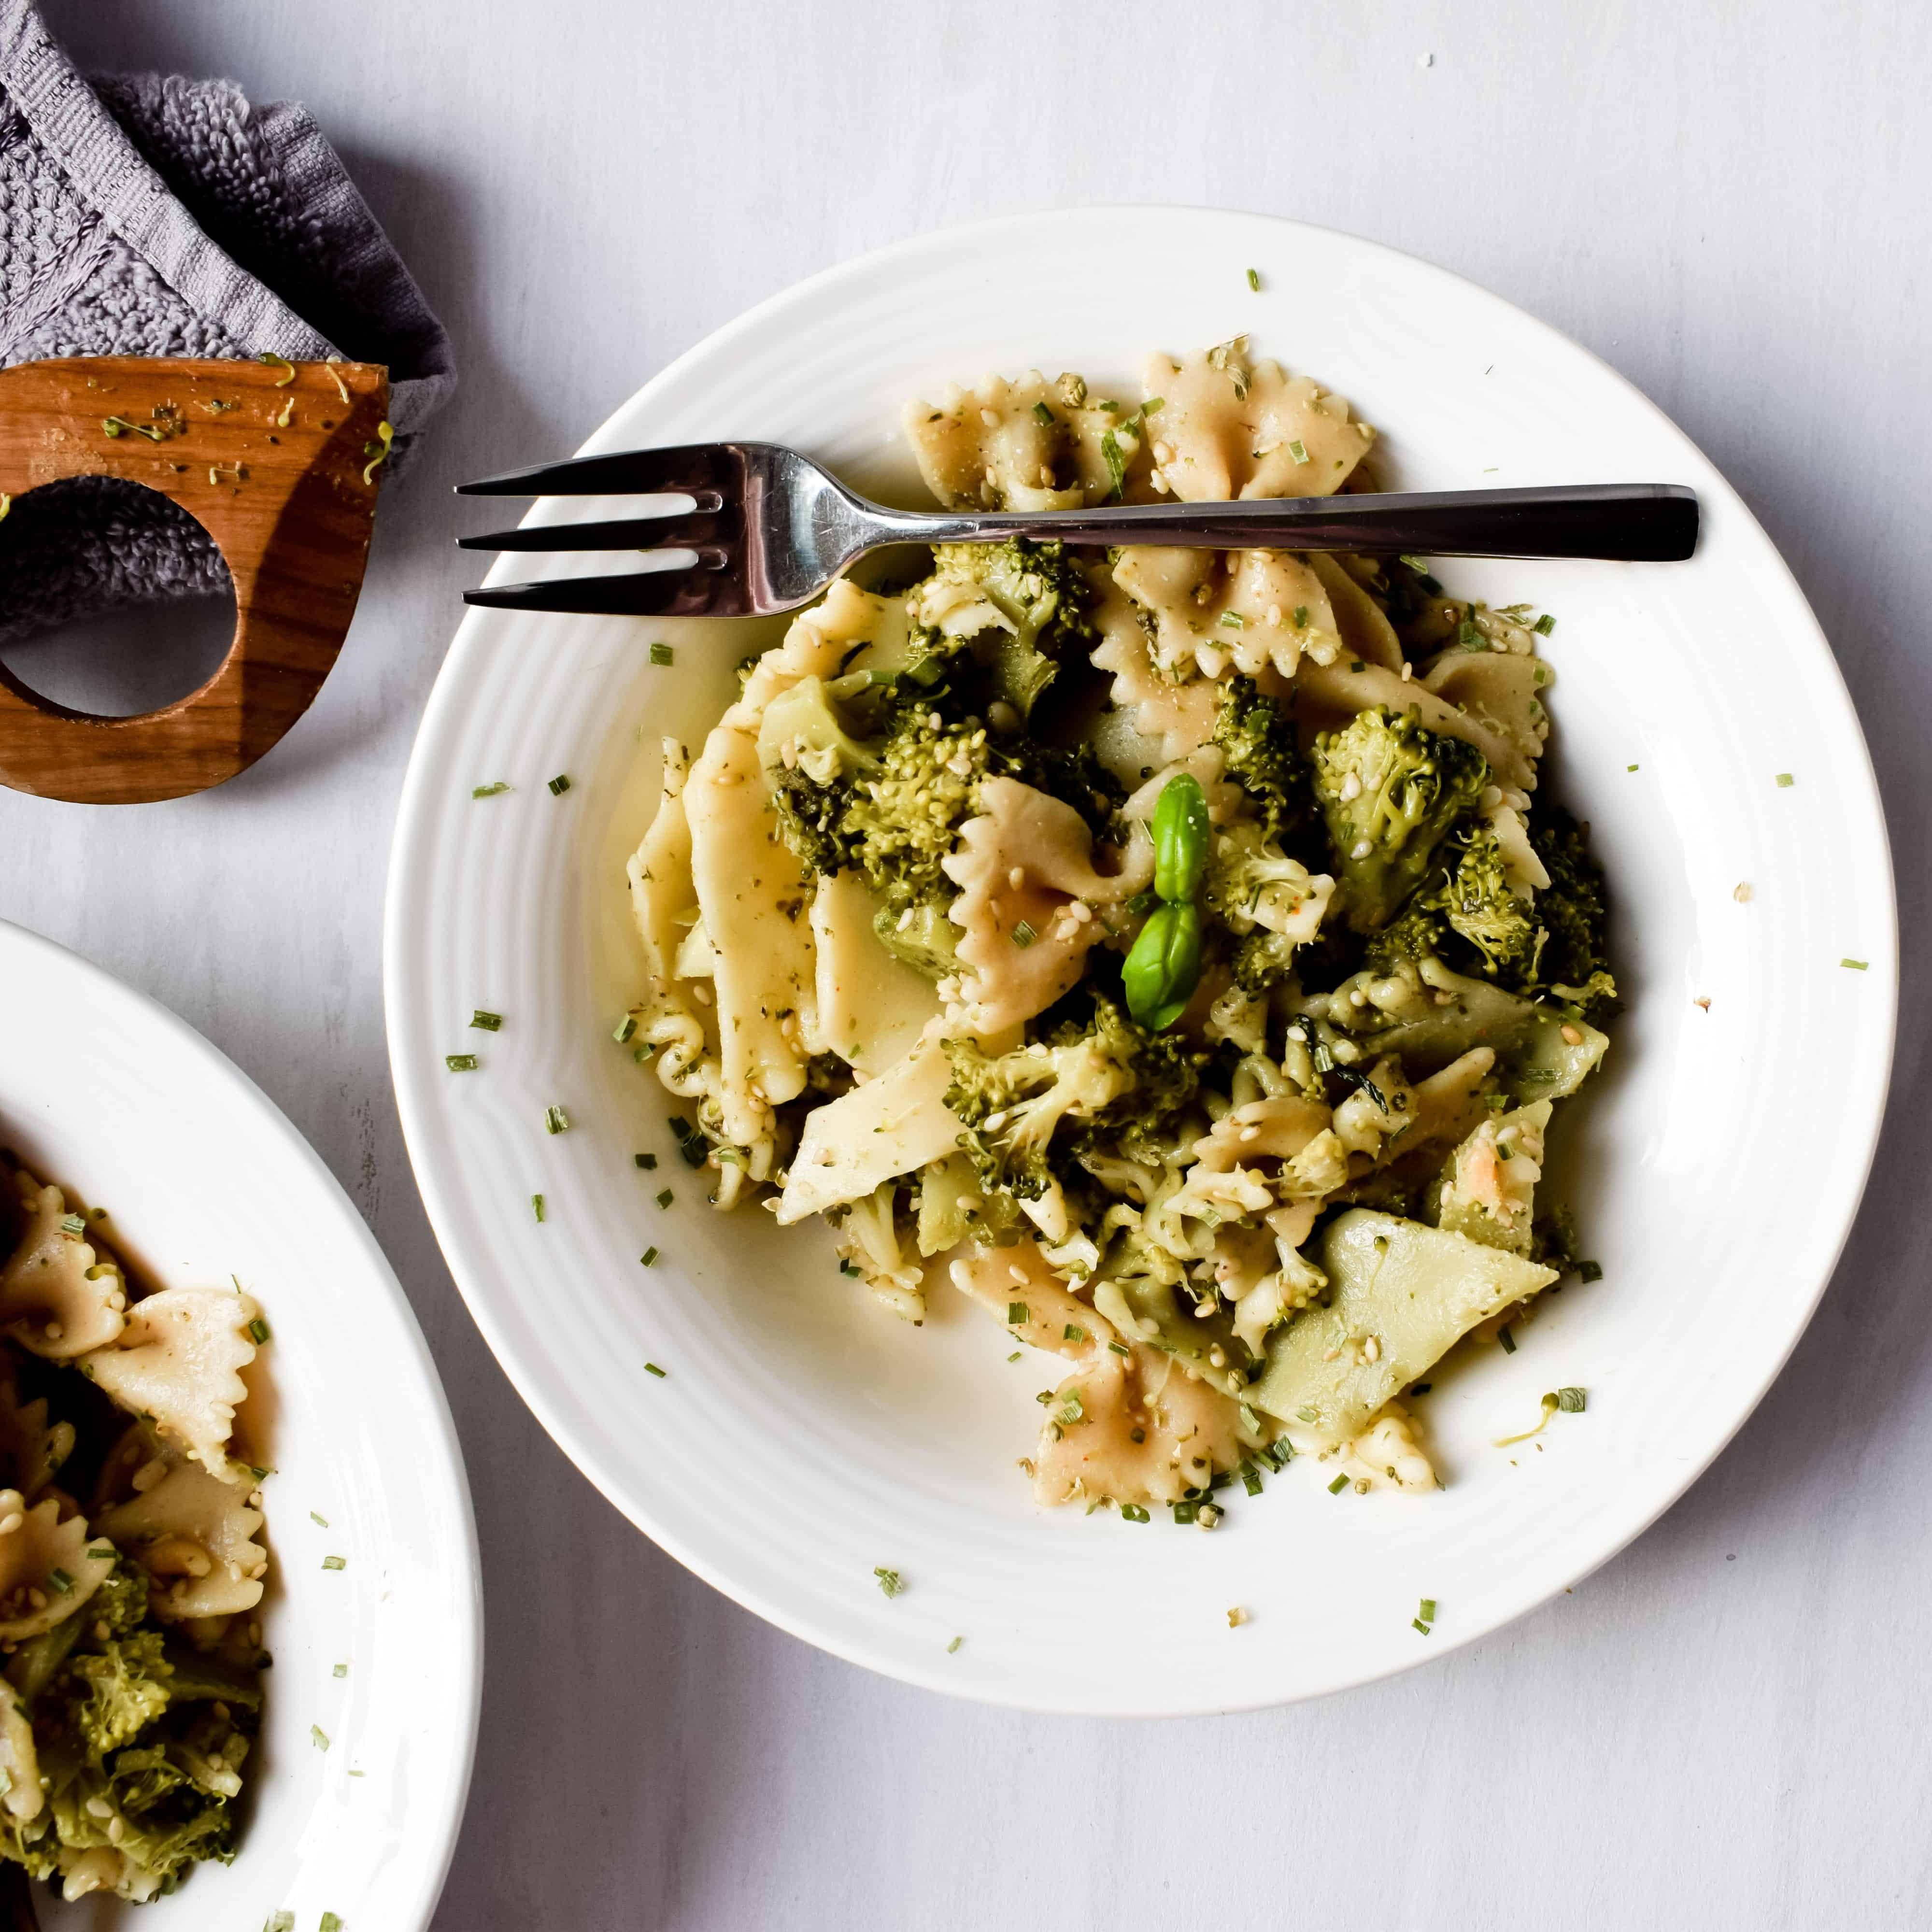 Vegan Pesto Pasta with Broccoli - My Vegan Minimalist